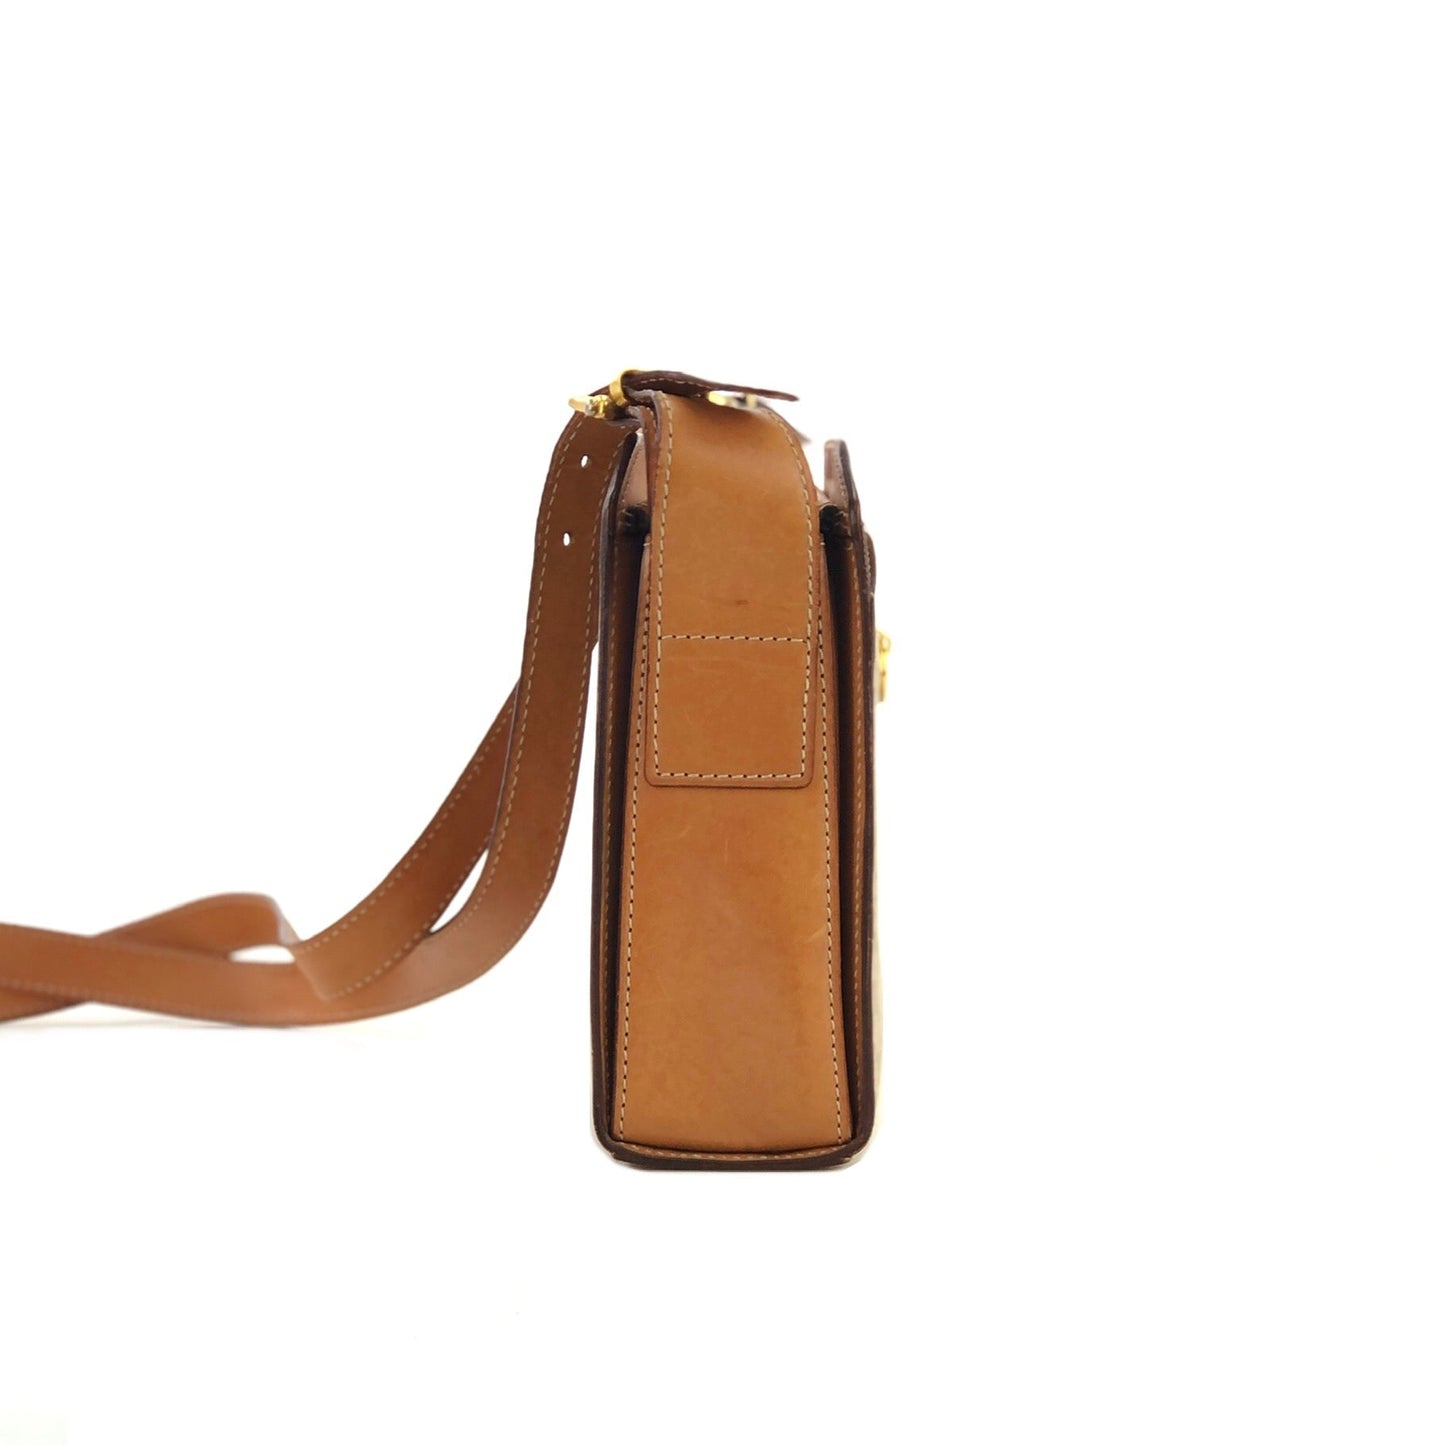 CELINE Macadam Mantel PVC Leather Shoulder Bag Beige Old Celine Vintage butgkf